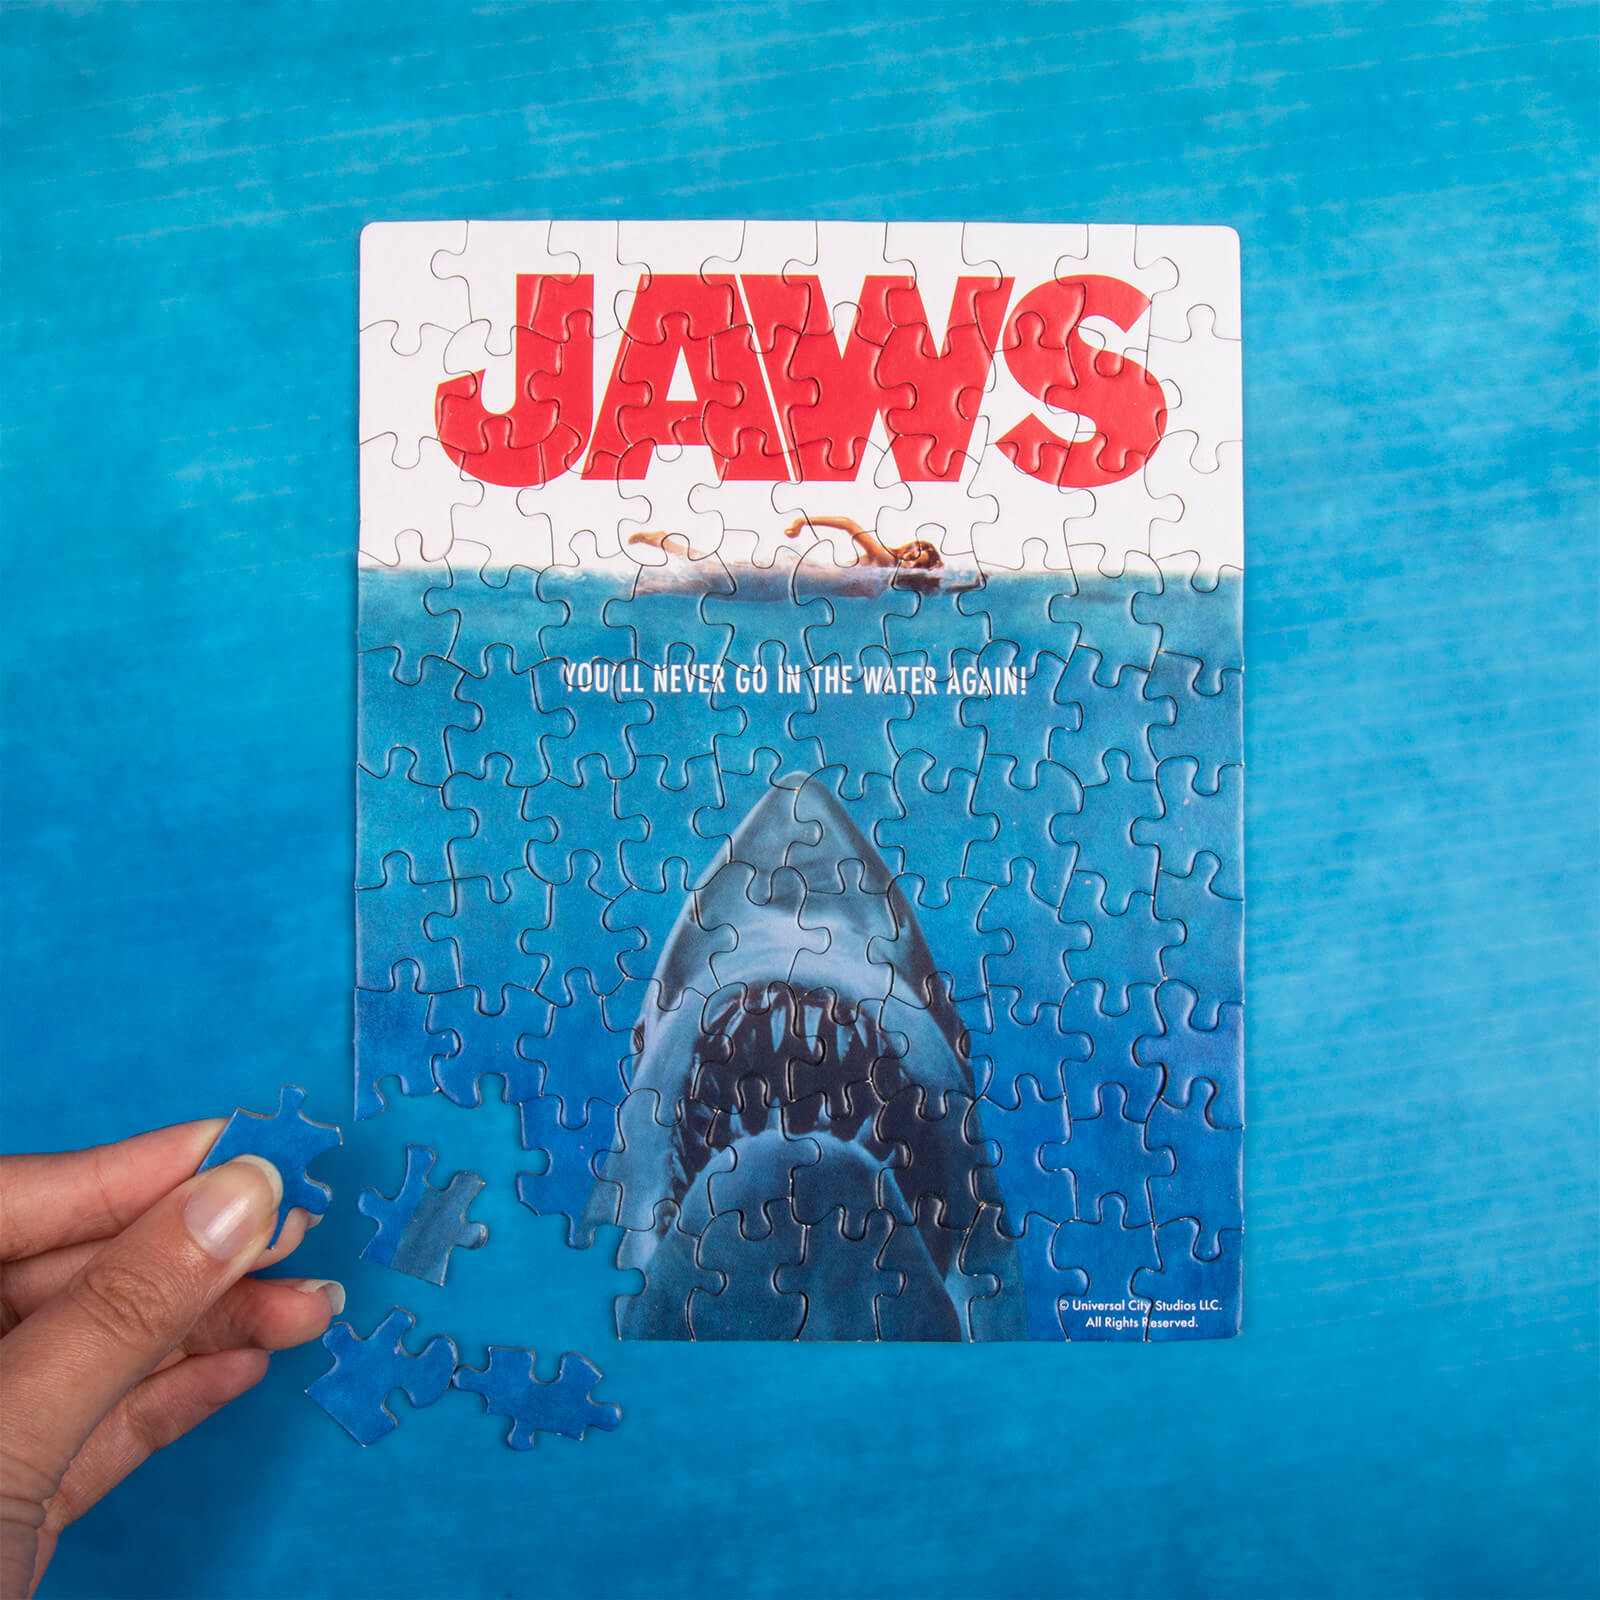 Jaws Mug & Jigsaw Puzzle Gift Set